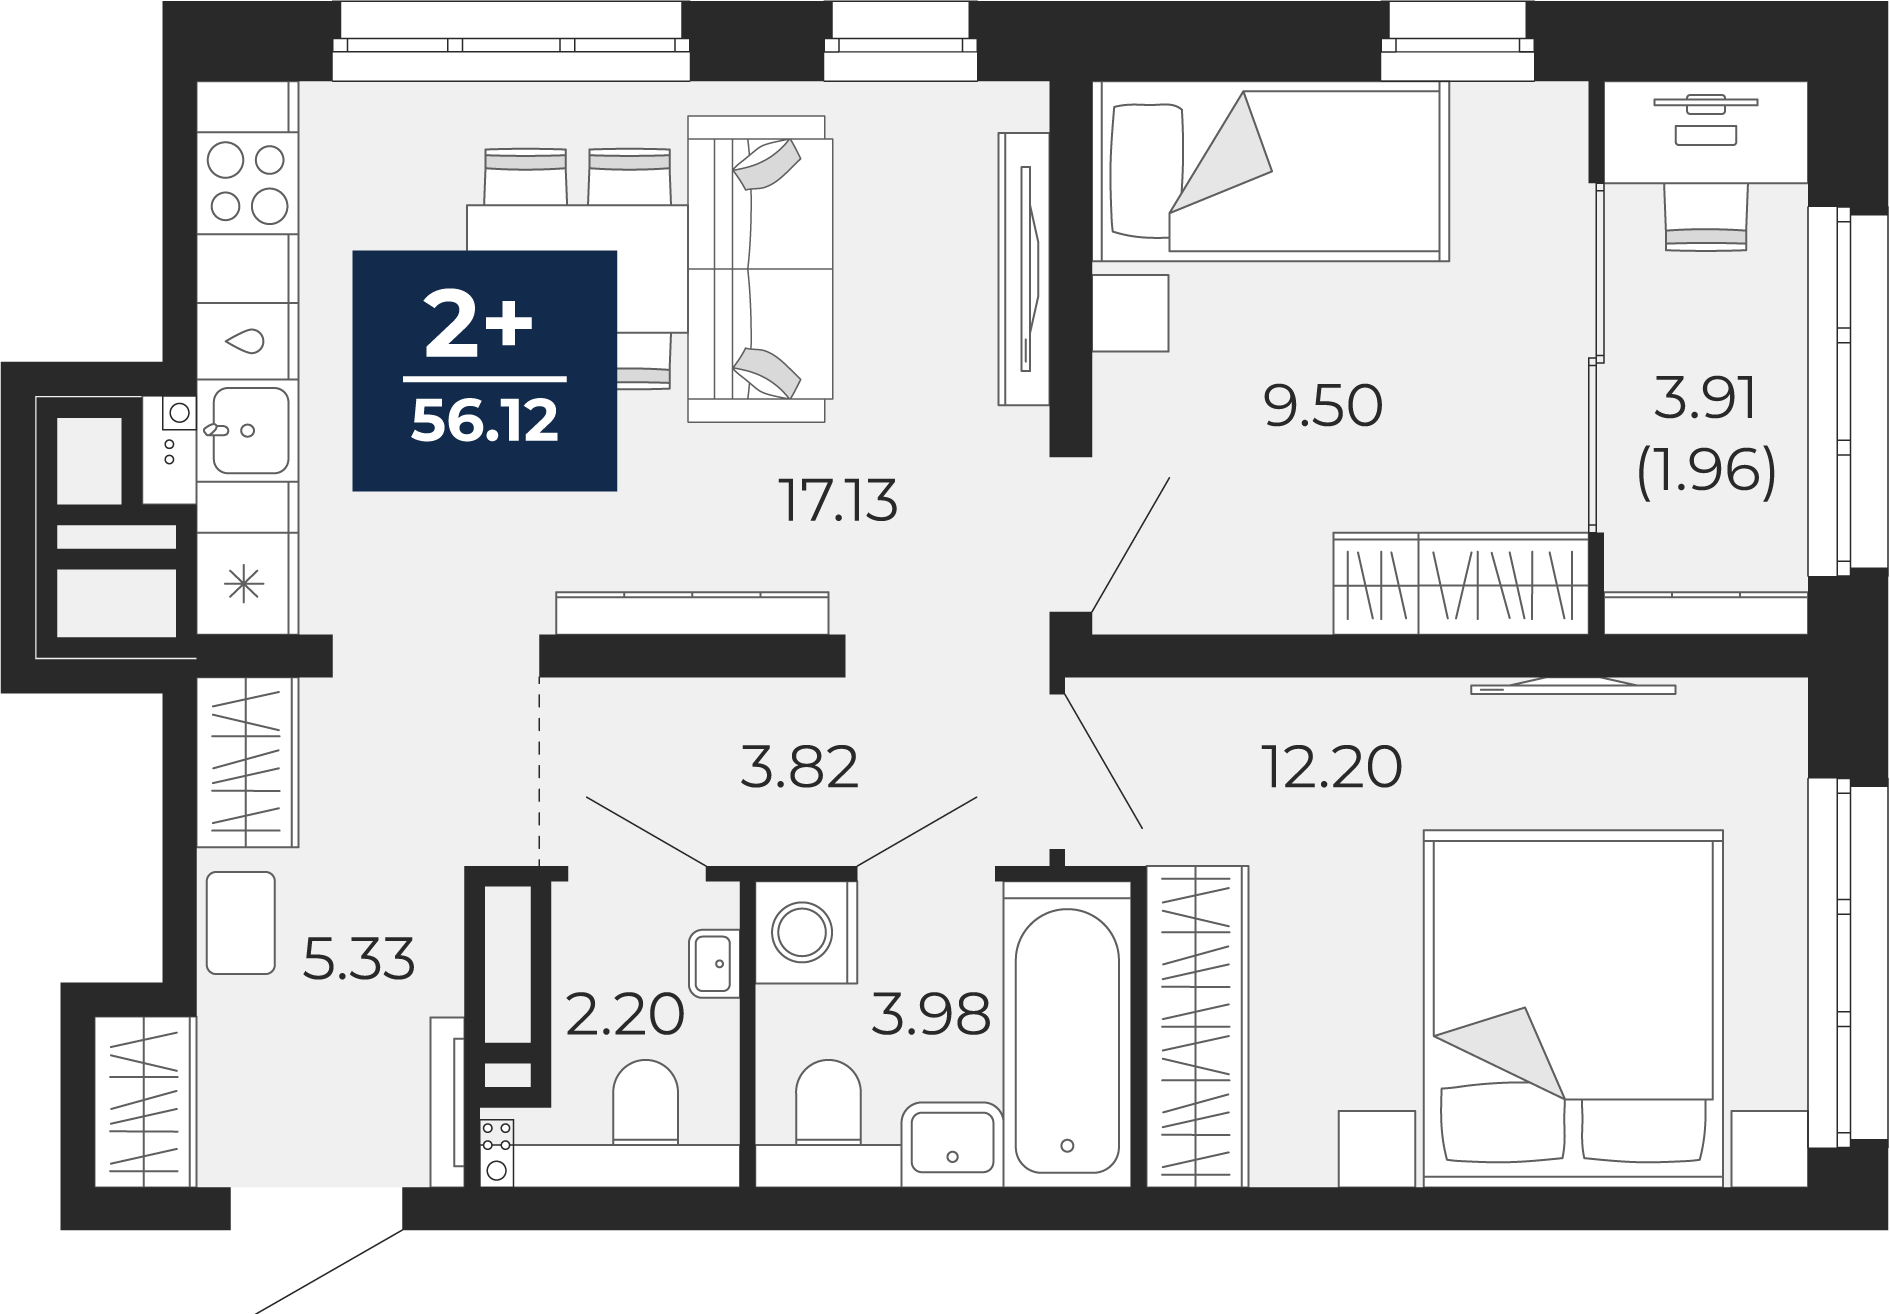 Квартира № 168, 2-комнатная, 56.12 кв. м, 16 этаж